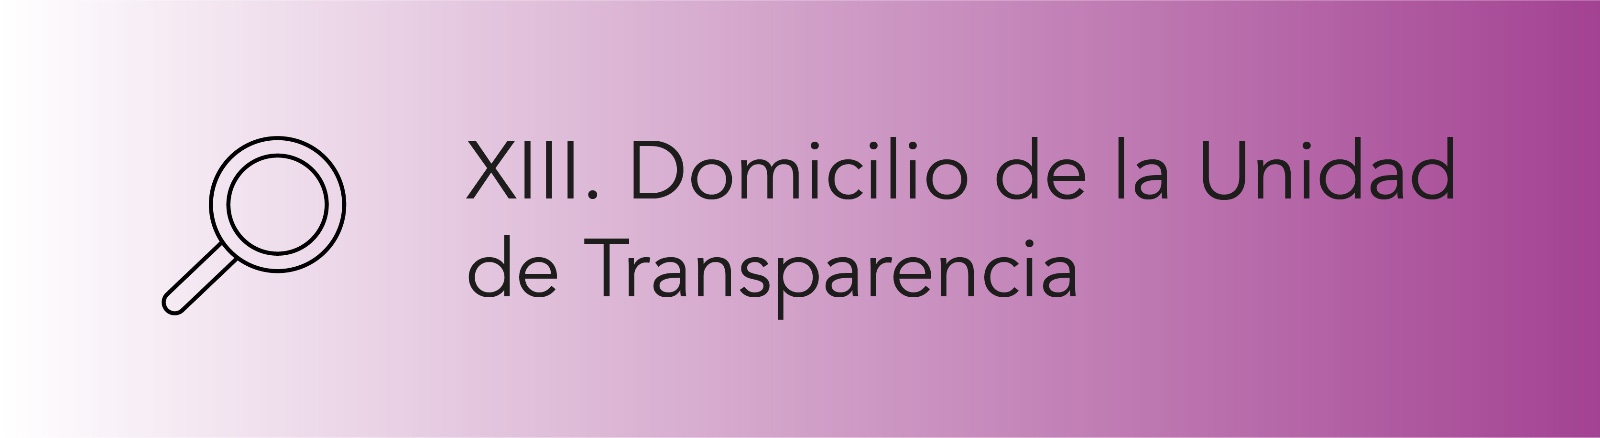 Imagen que permite conocer el Domicilio de la Unidad de Transparencia